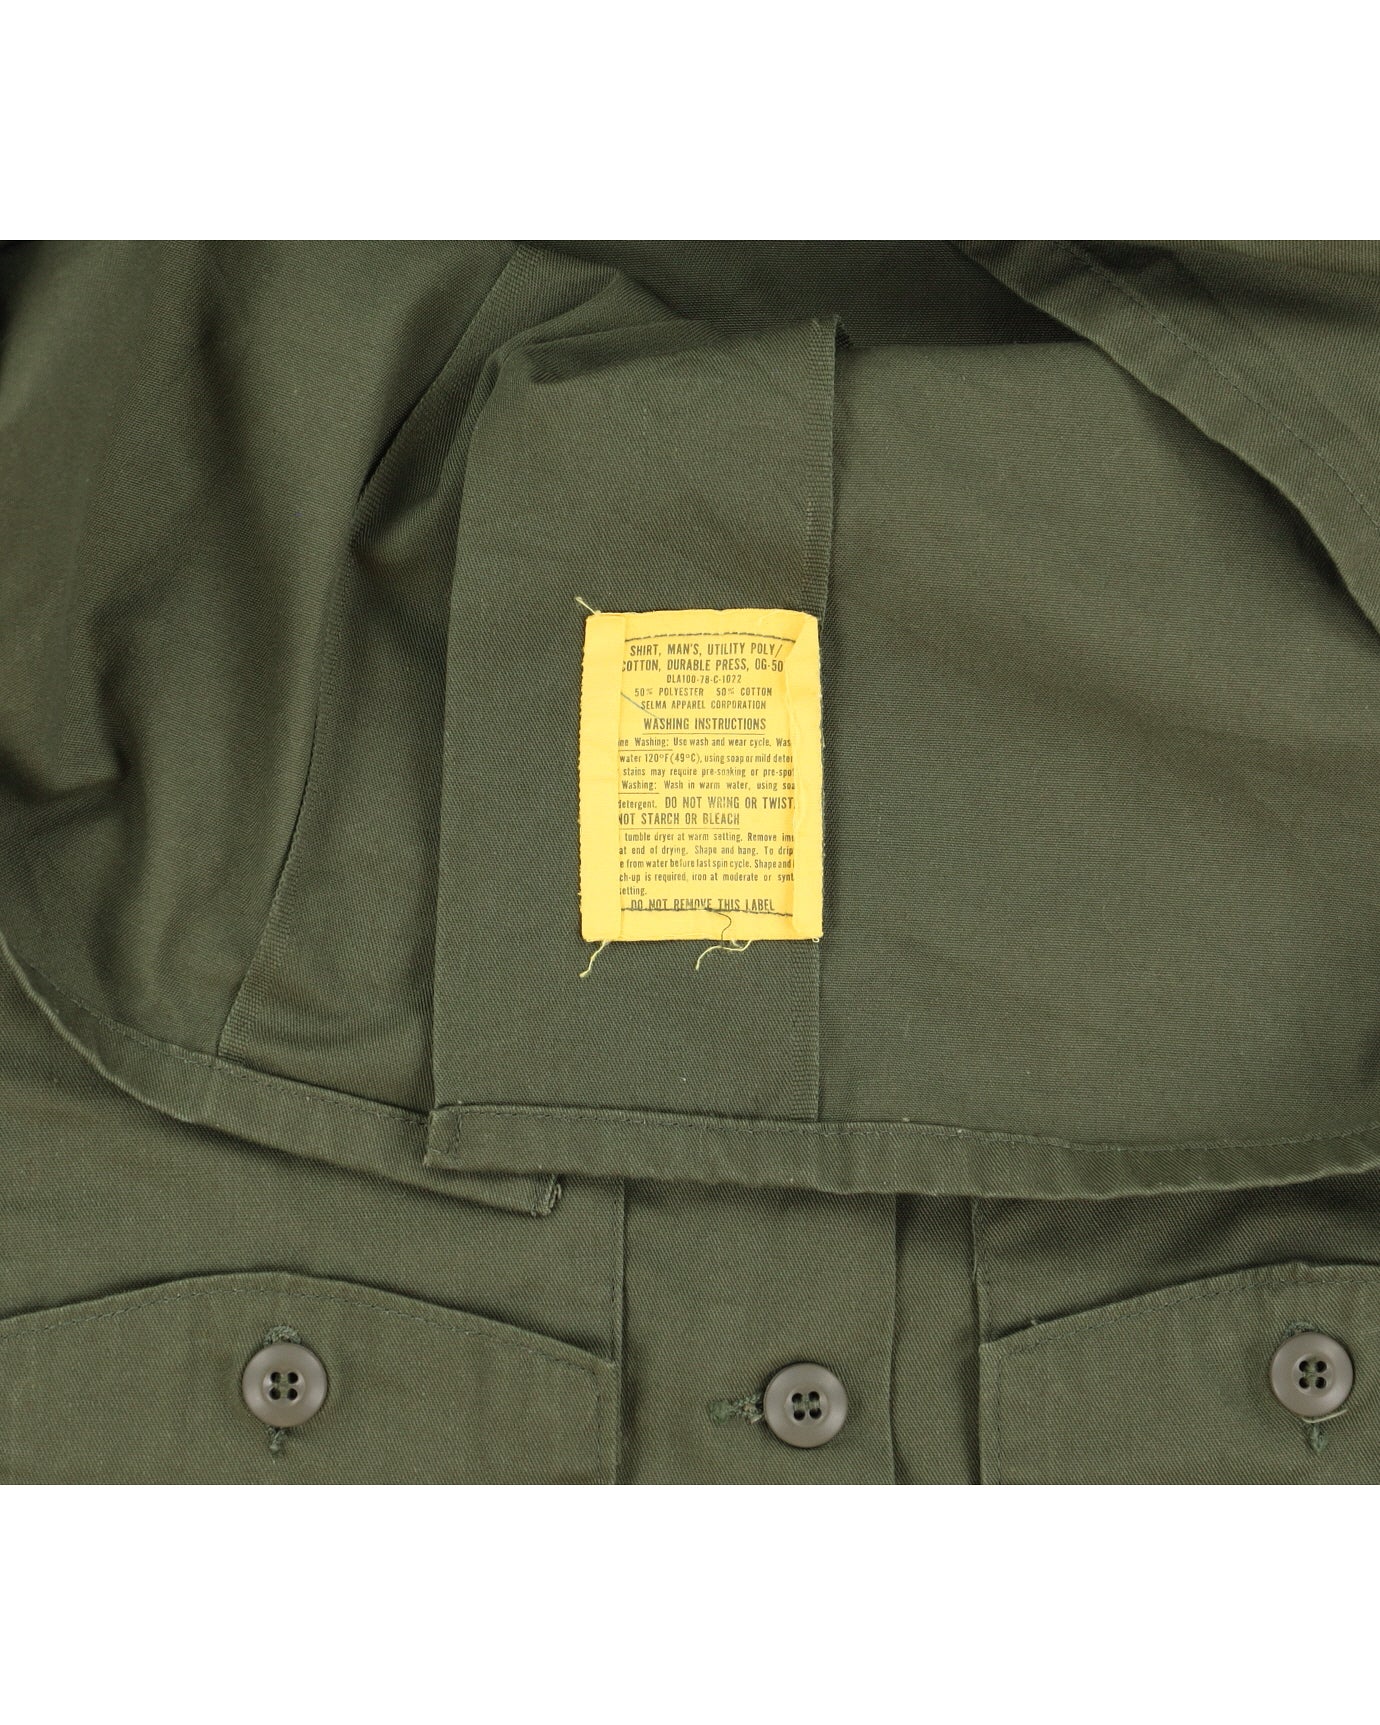 70s Vintage US Army OG-507 Shirt - M